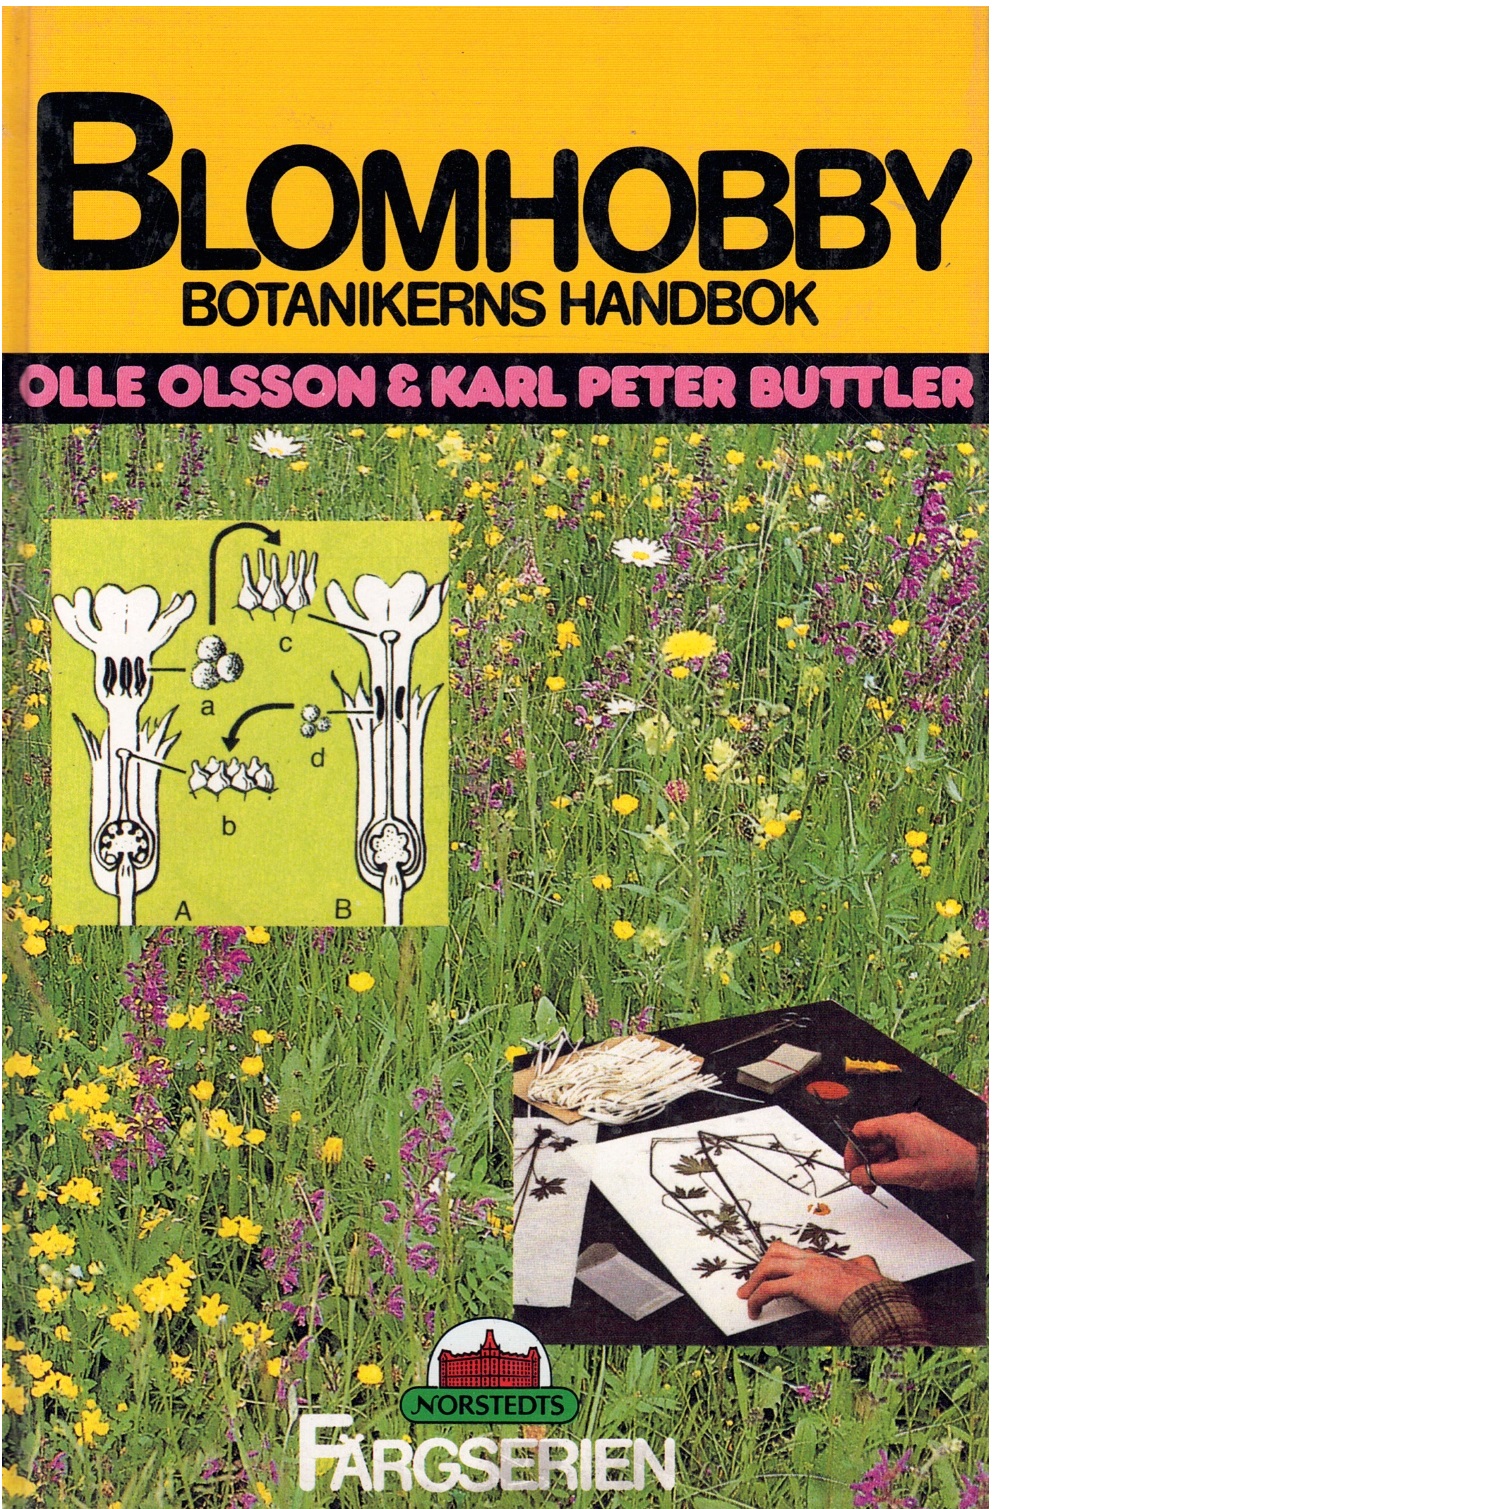 Blomhobby : botanistens handbok - Olsson, Olle G och Buttler, Karl Peter